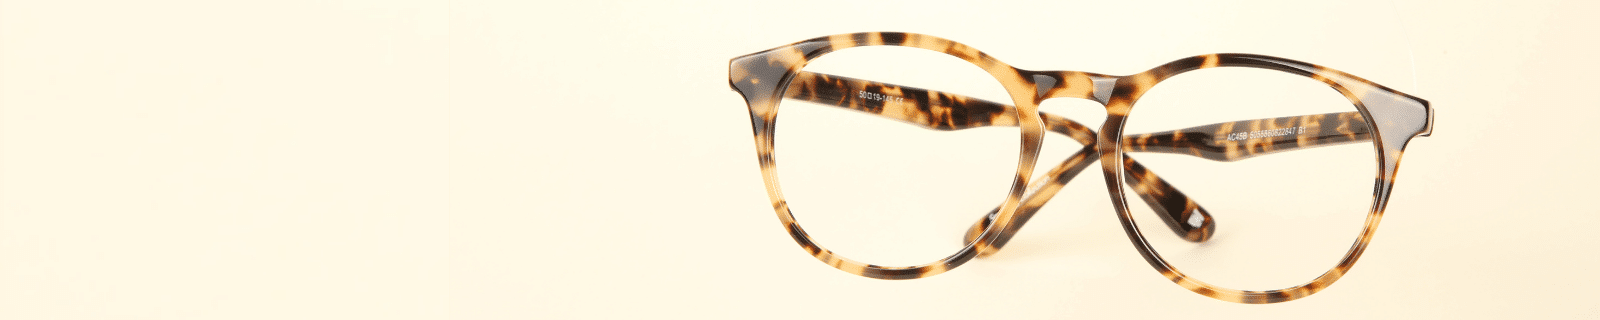 flat lay shot of tortoiseshell print horn rimmed glasses